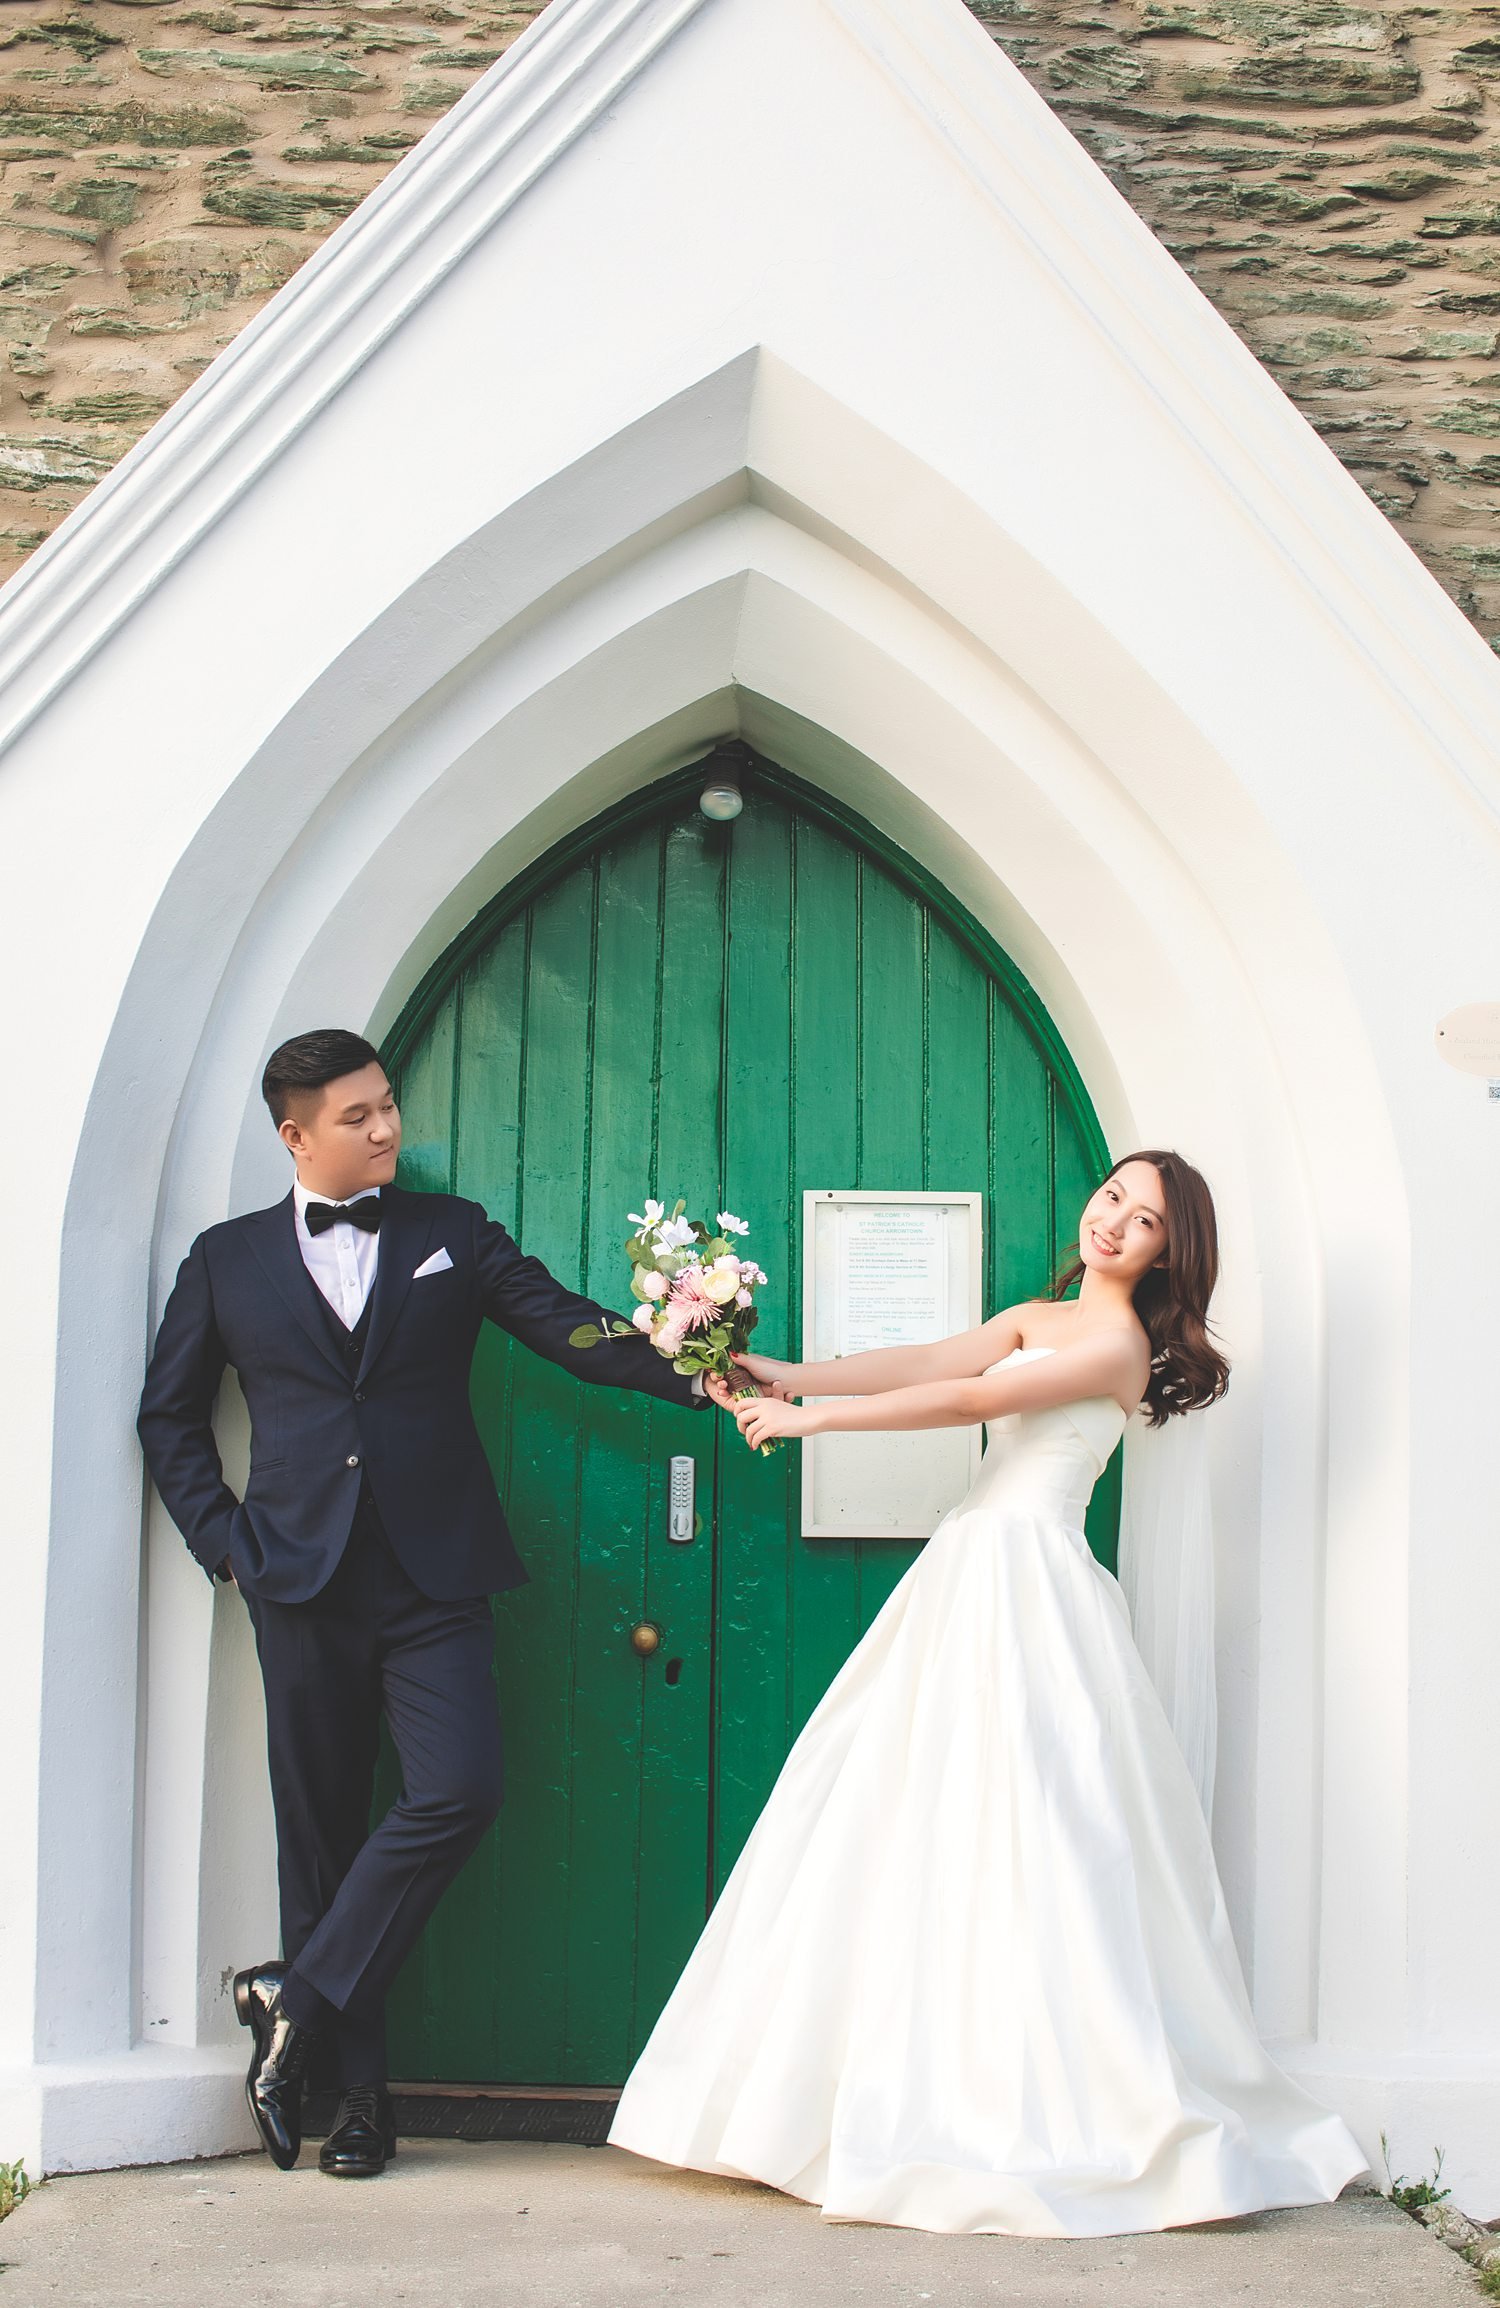 Pennty & Jay Queenstown pre wedding elopement photography | Queenstown photograrpher for wedding-28.jpg